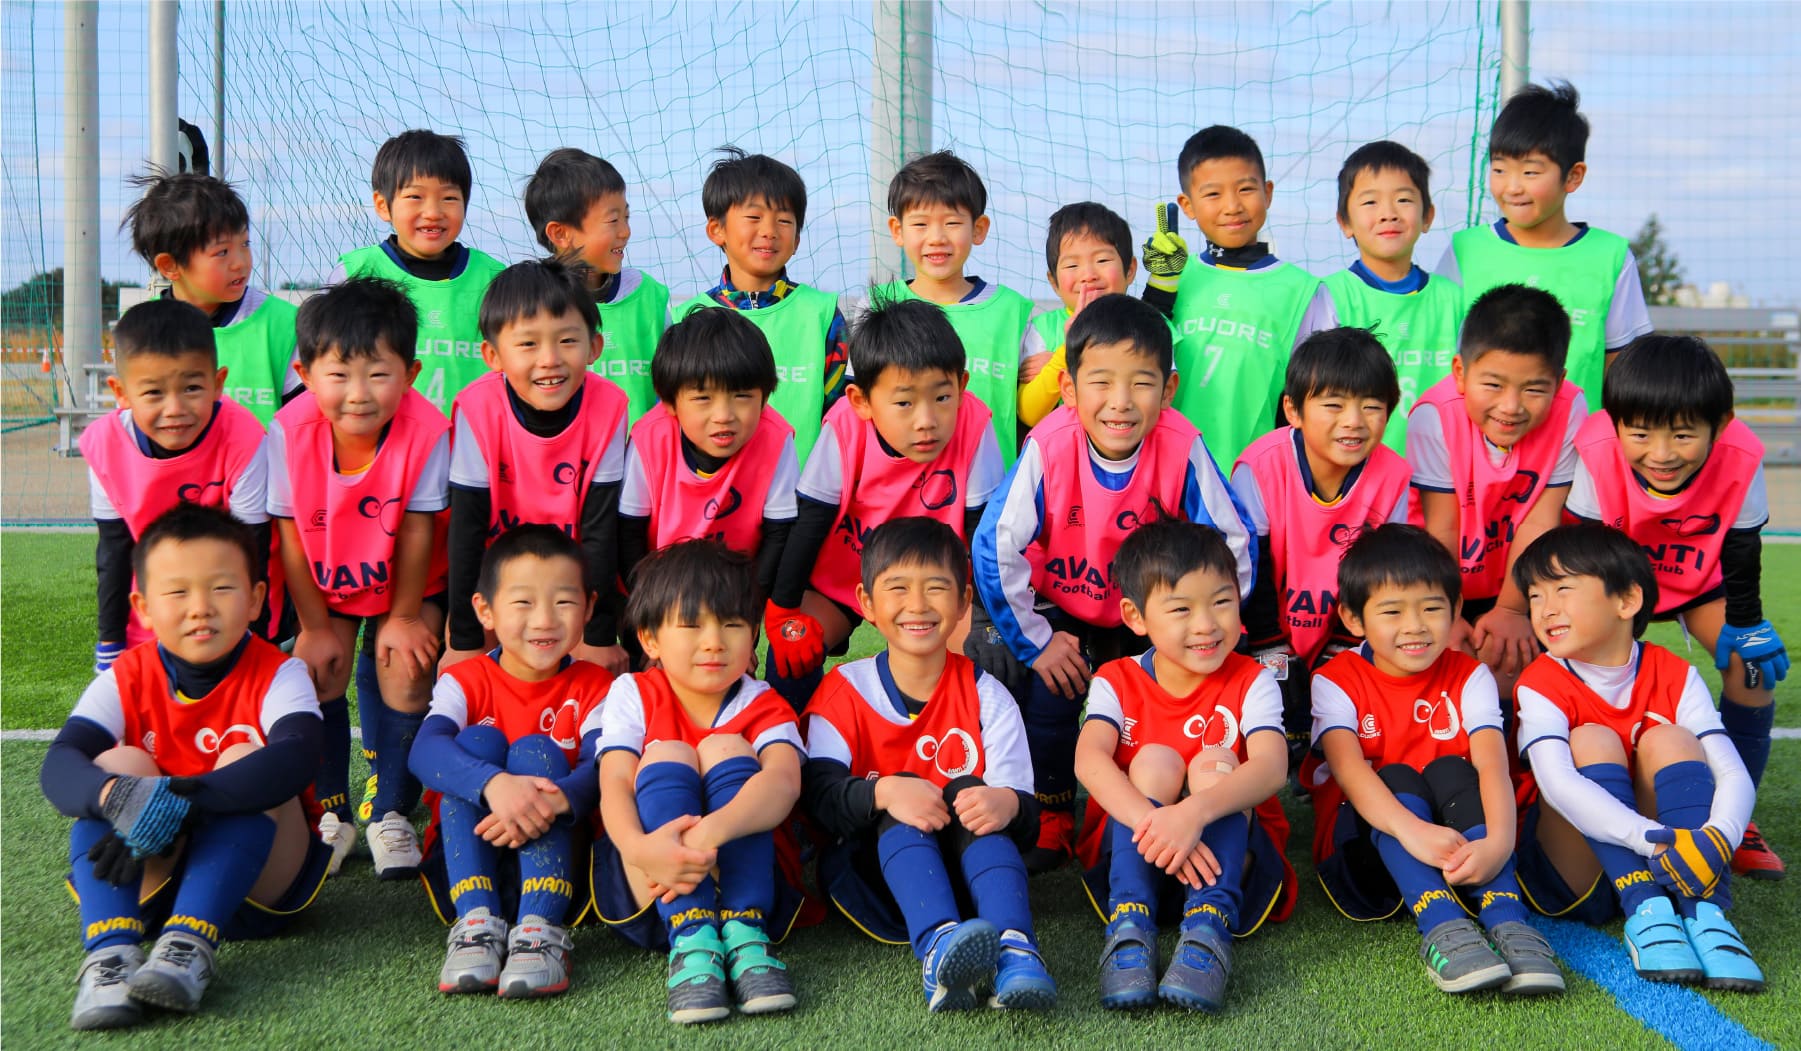 いつでもキャンペーン 大阪のサッカースクール サッカーチーム Avanti Football Club アバンティ フットボールクラブ